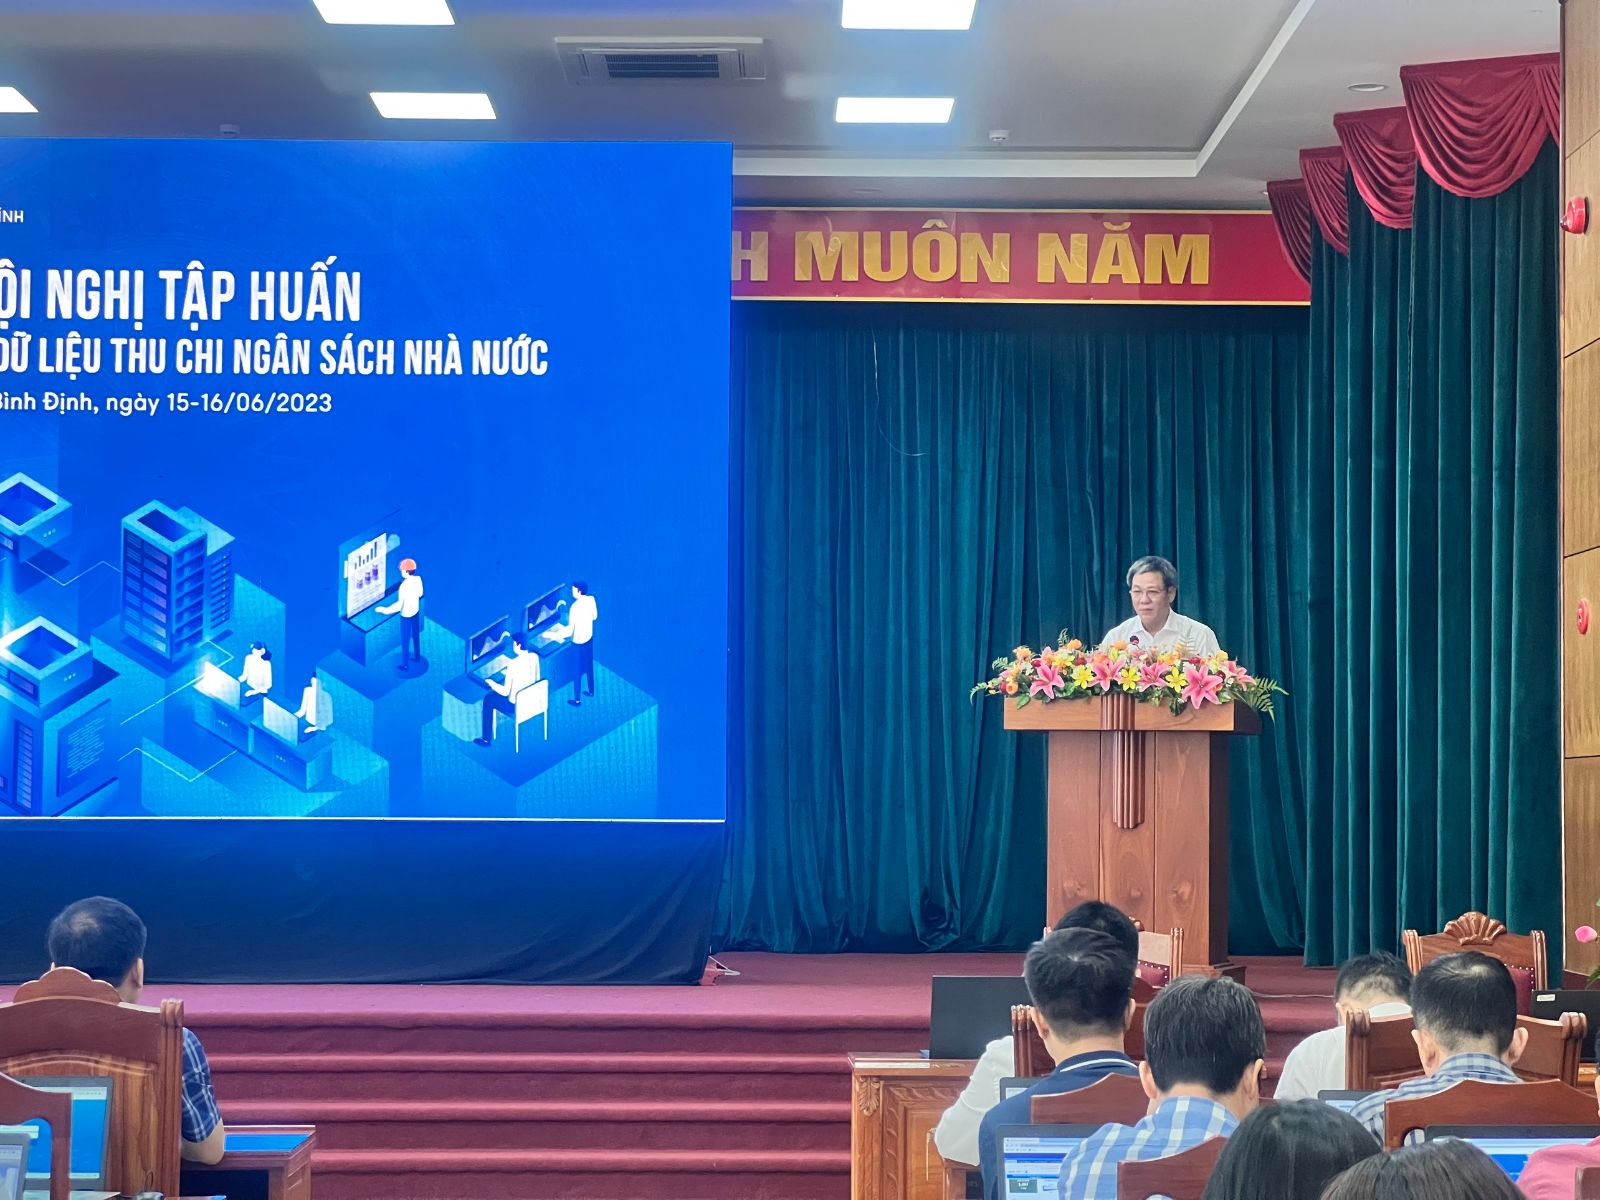 Ông Phạm Văn Thành, Phó Giám đốc, Sở Tài chính tỉnh Bình Định phát biểu tại Hội nghị. Ảnh: Lan Anh.